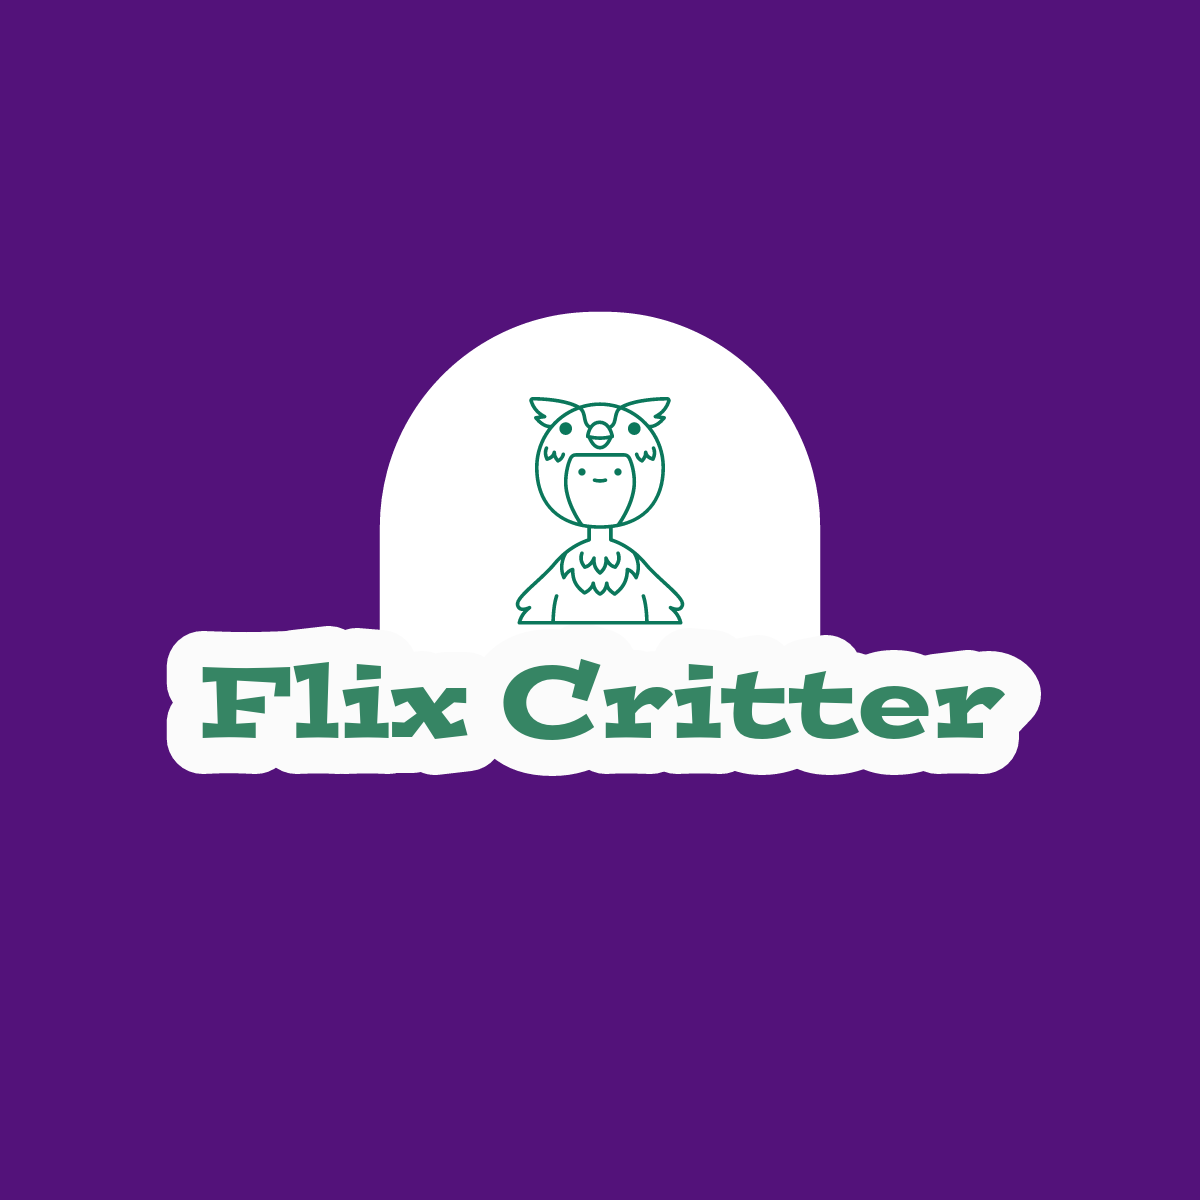 Flix Critter